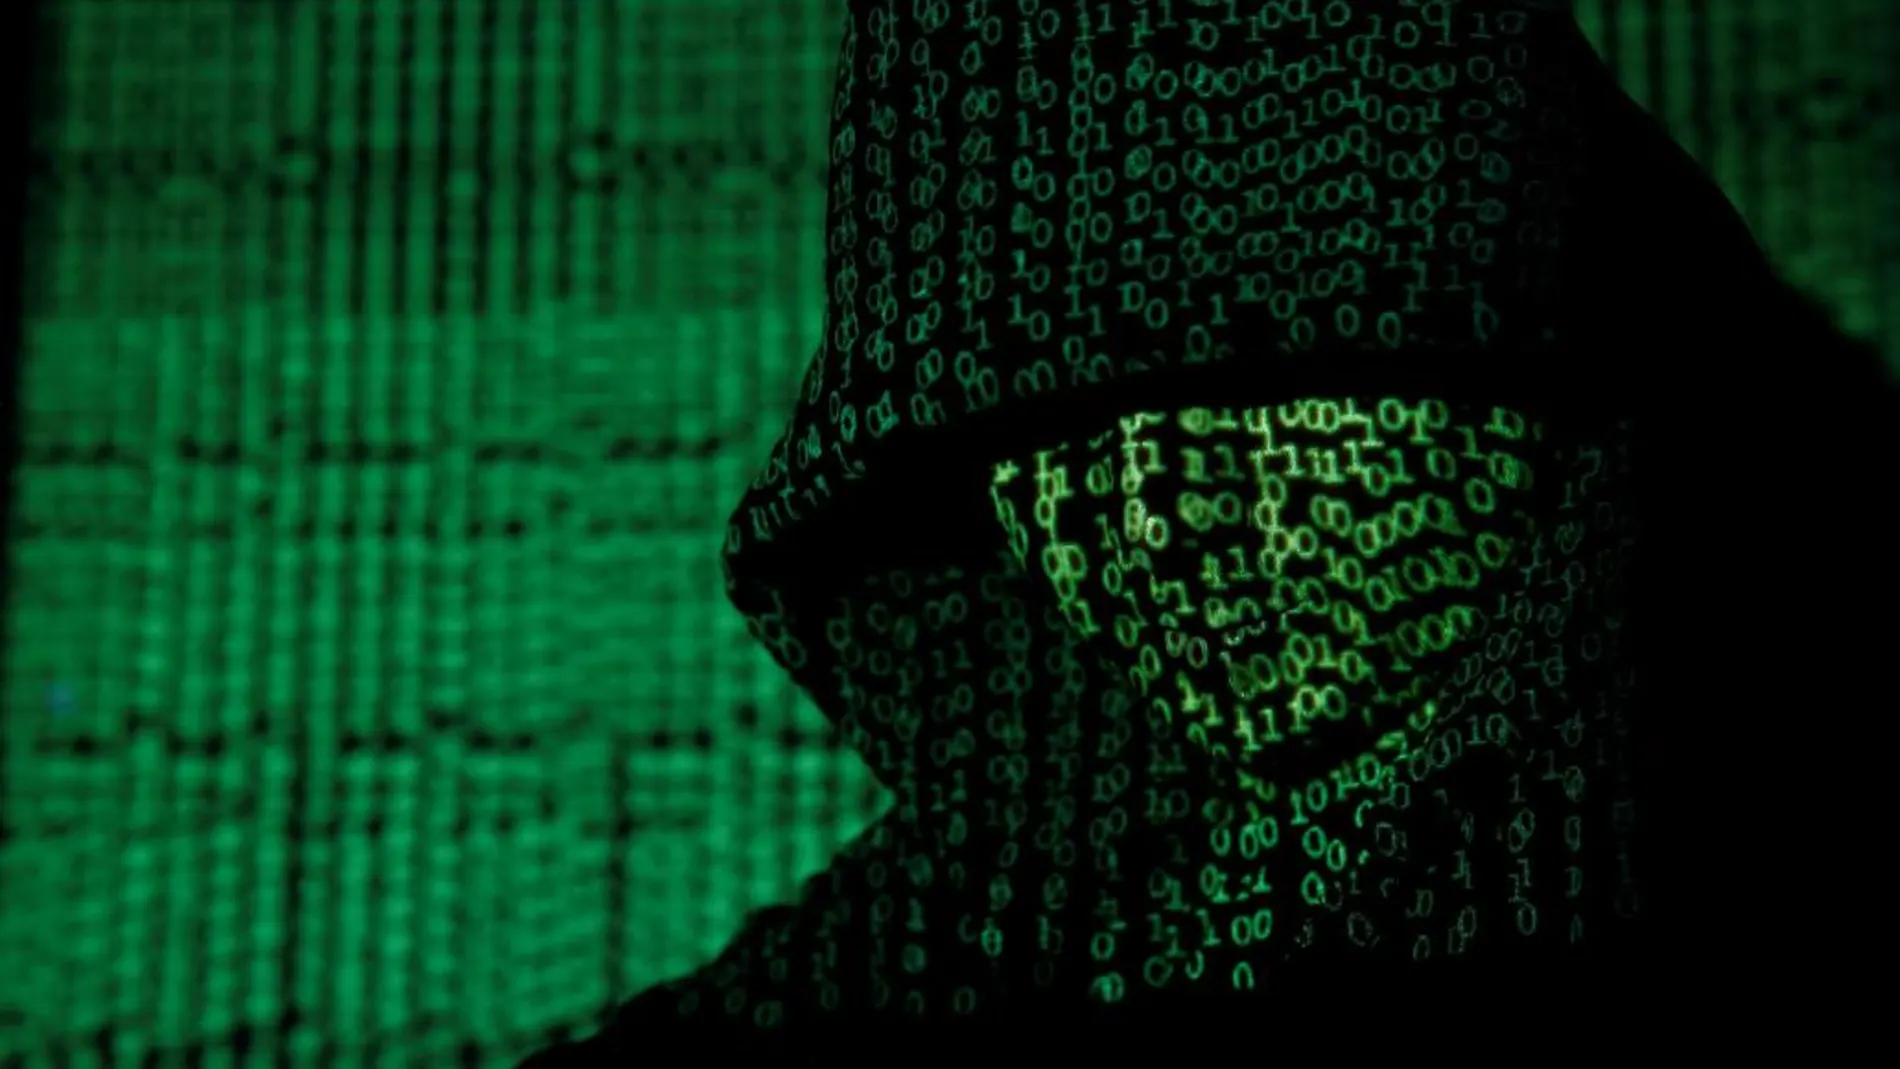 El malware detectado reclama 150 euros a la víctima del fraude